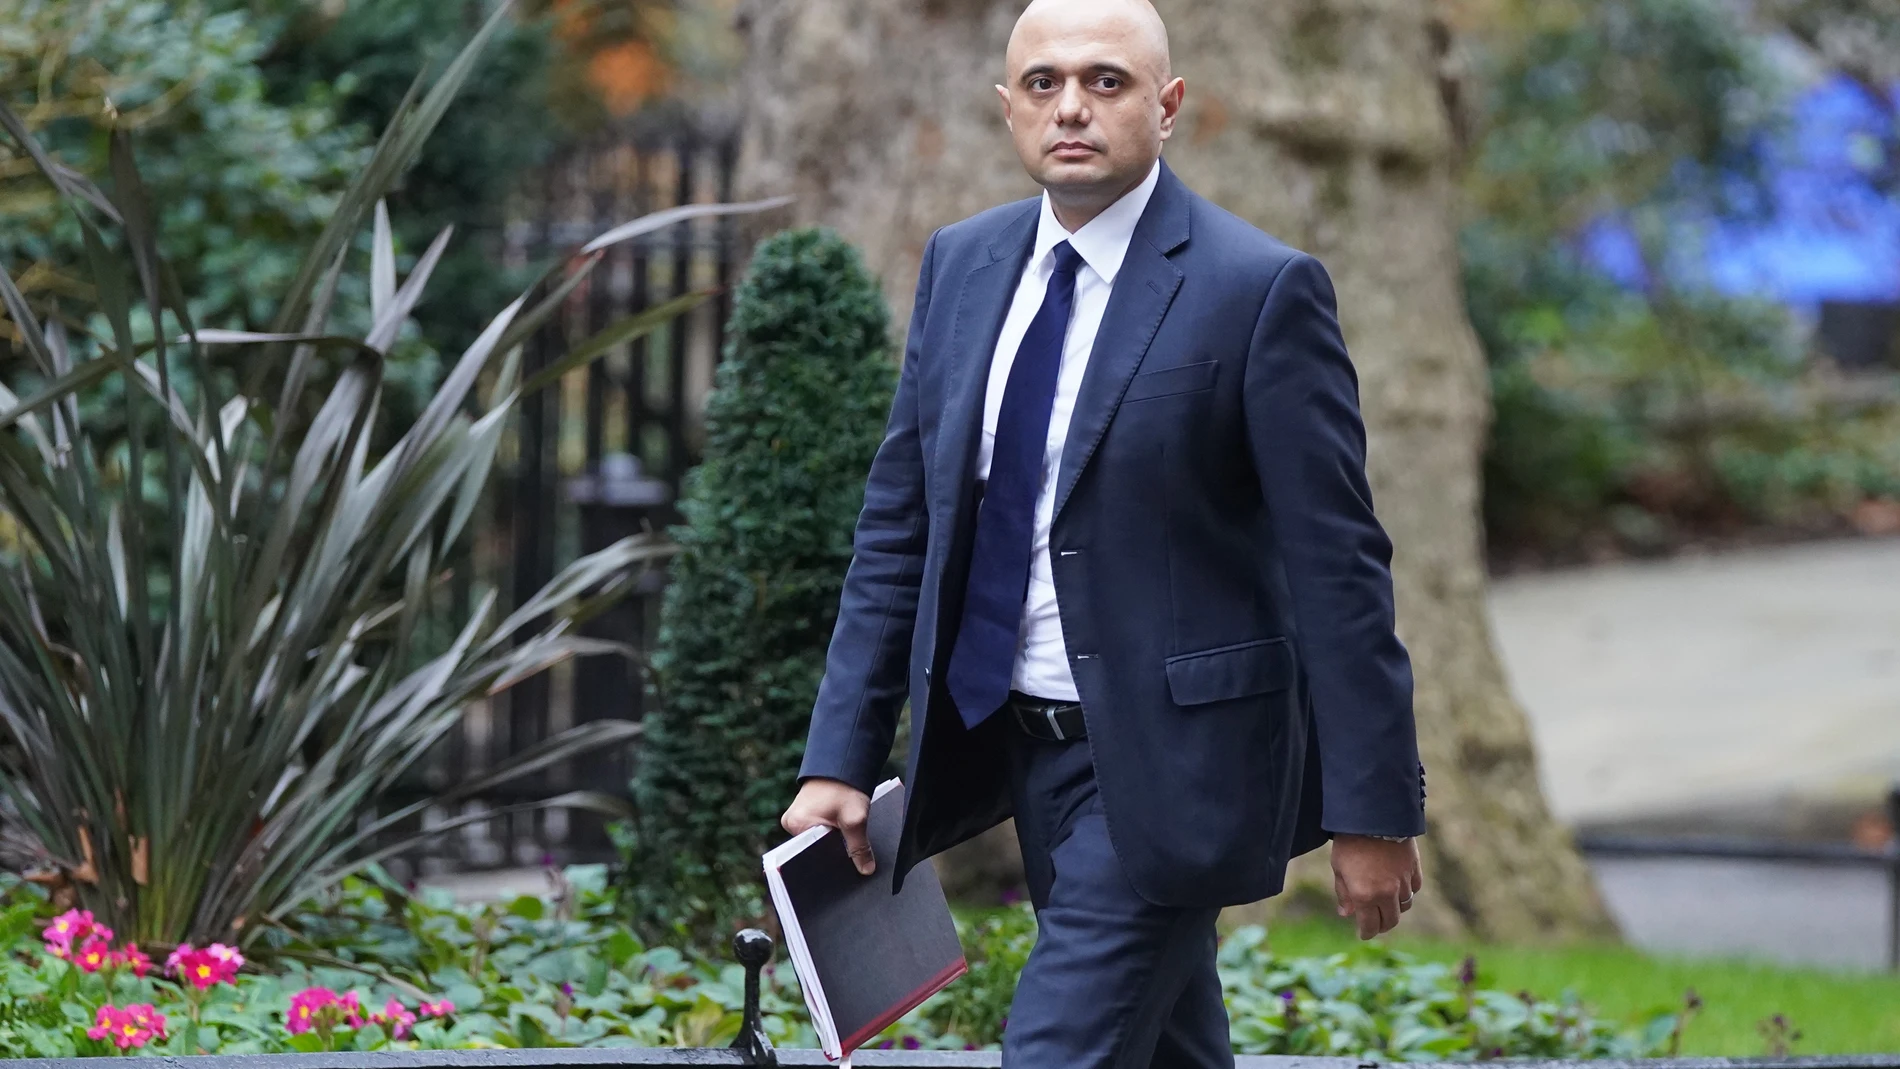 El mnistro de Sanidad británico, Sajid Javid, tras abandonar Downing Street